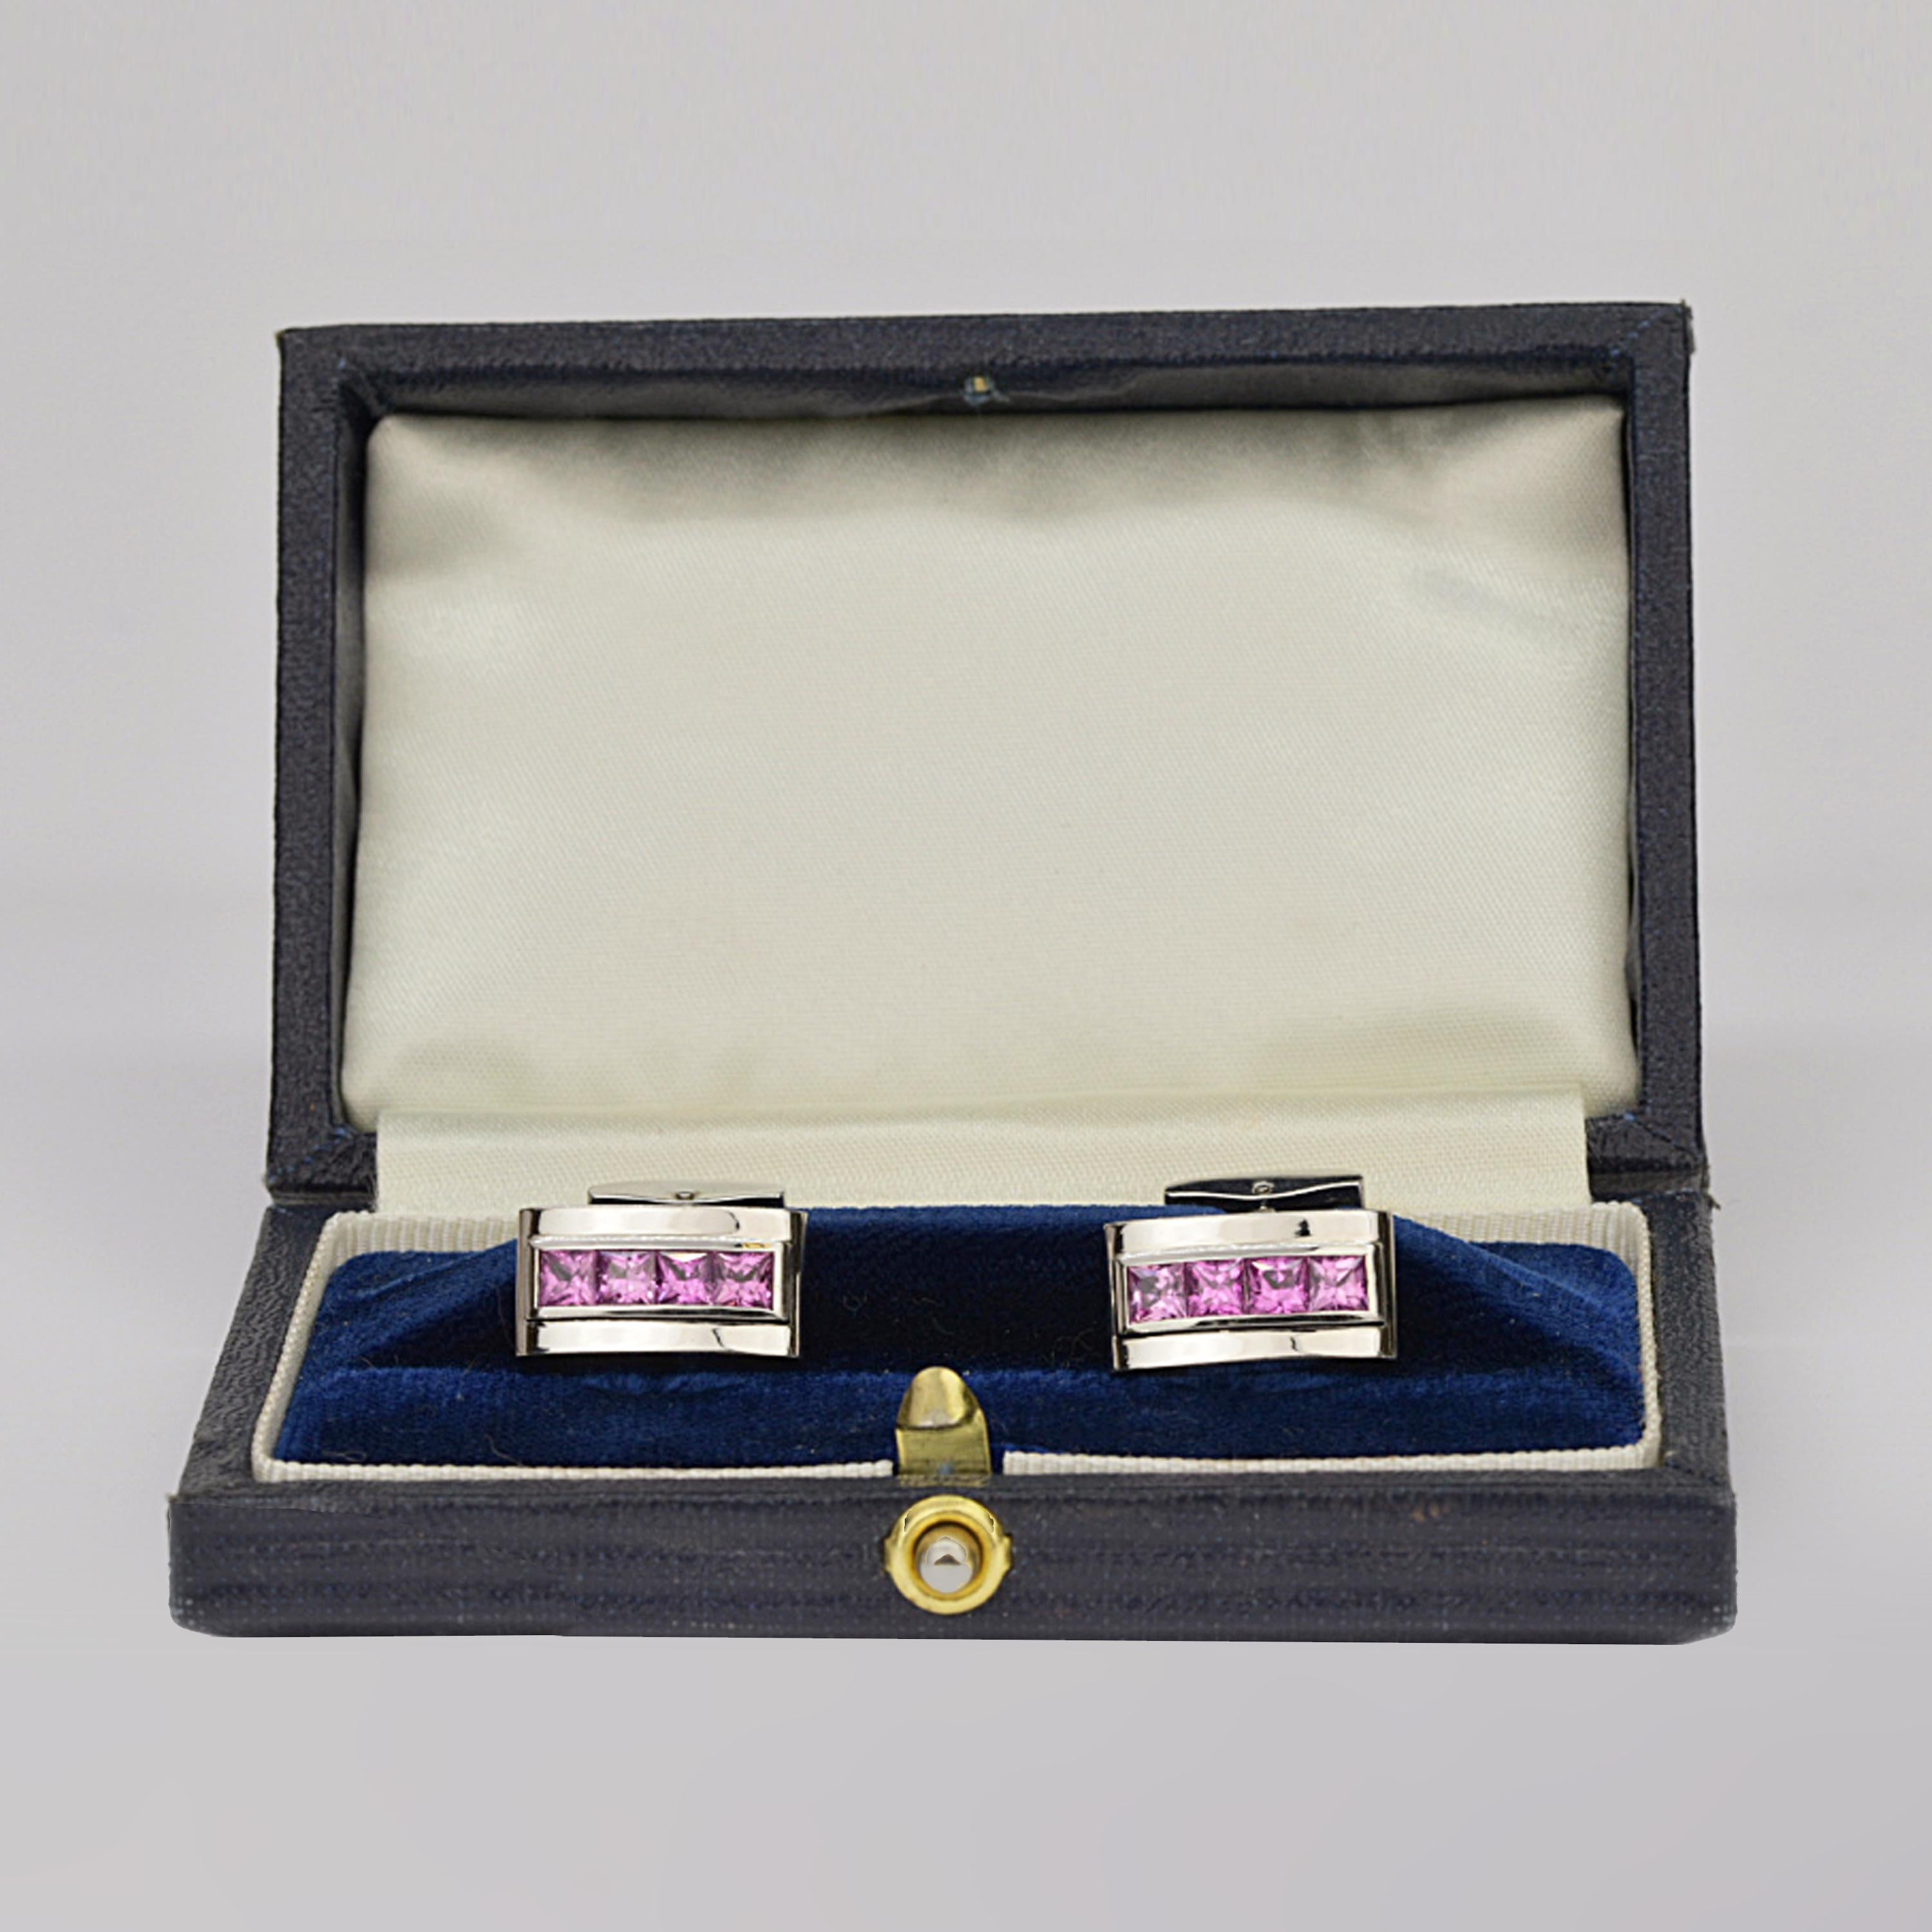 Contemporary Matthew Cambery 18 Karat White Gold Princess Cut Pink Sapphire Cufflinks